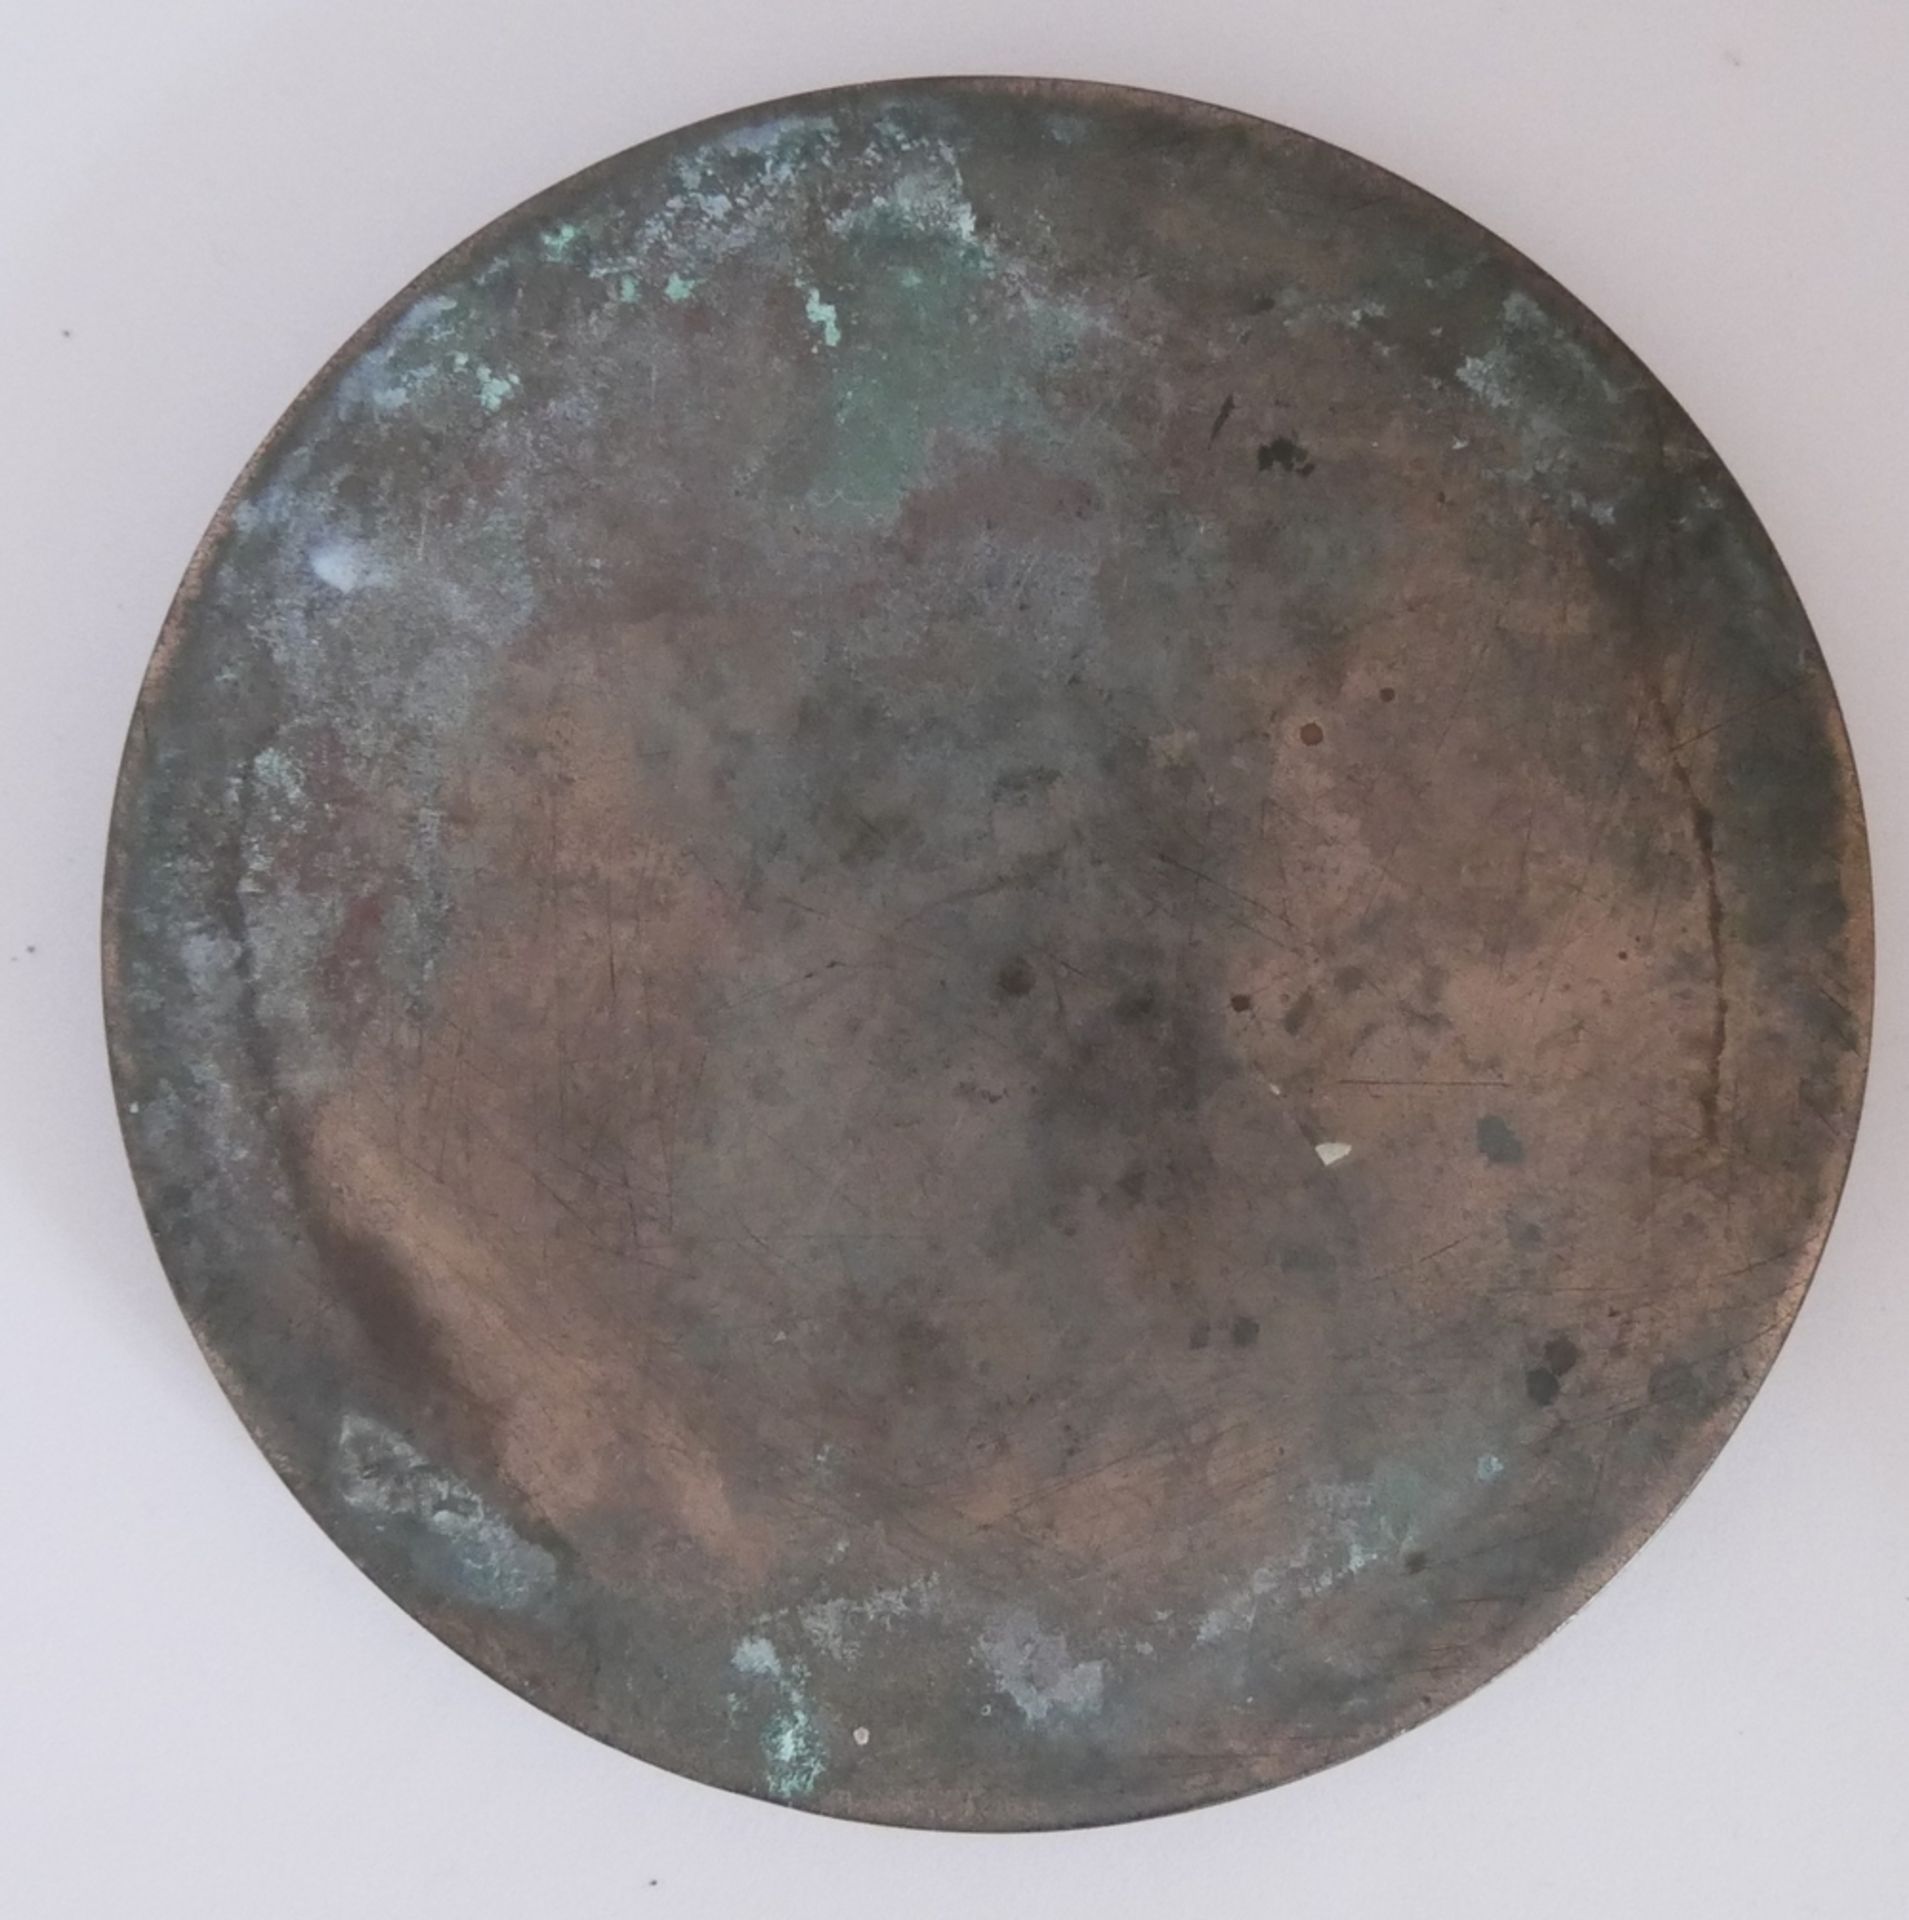 Bronzespiegel China, wohl Qing-Dynastie (1644-1911) im inneren Kreis Reliefdekor. Durchmesser ca. - Bild 2 aus 2